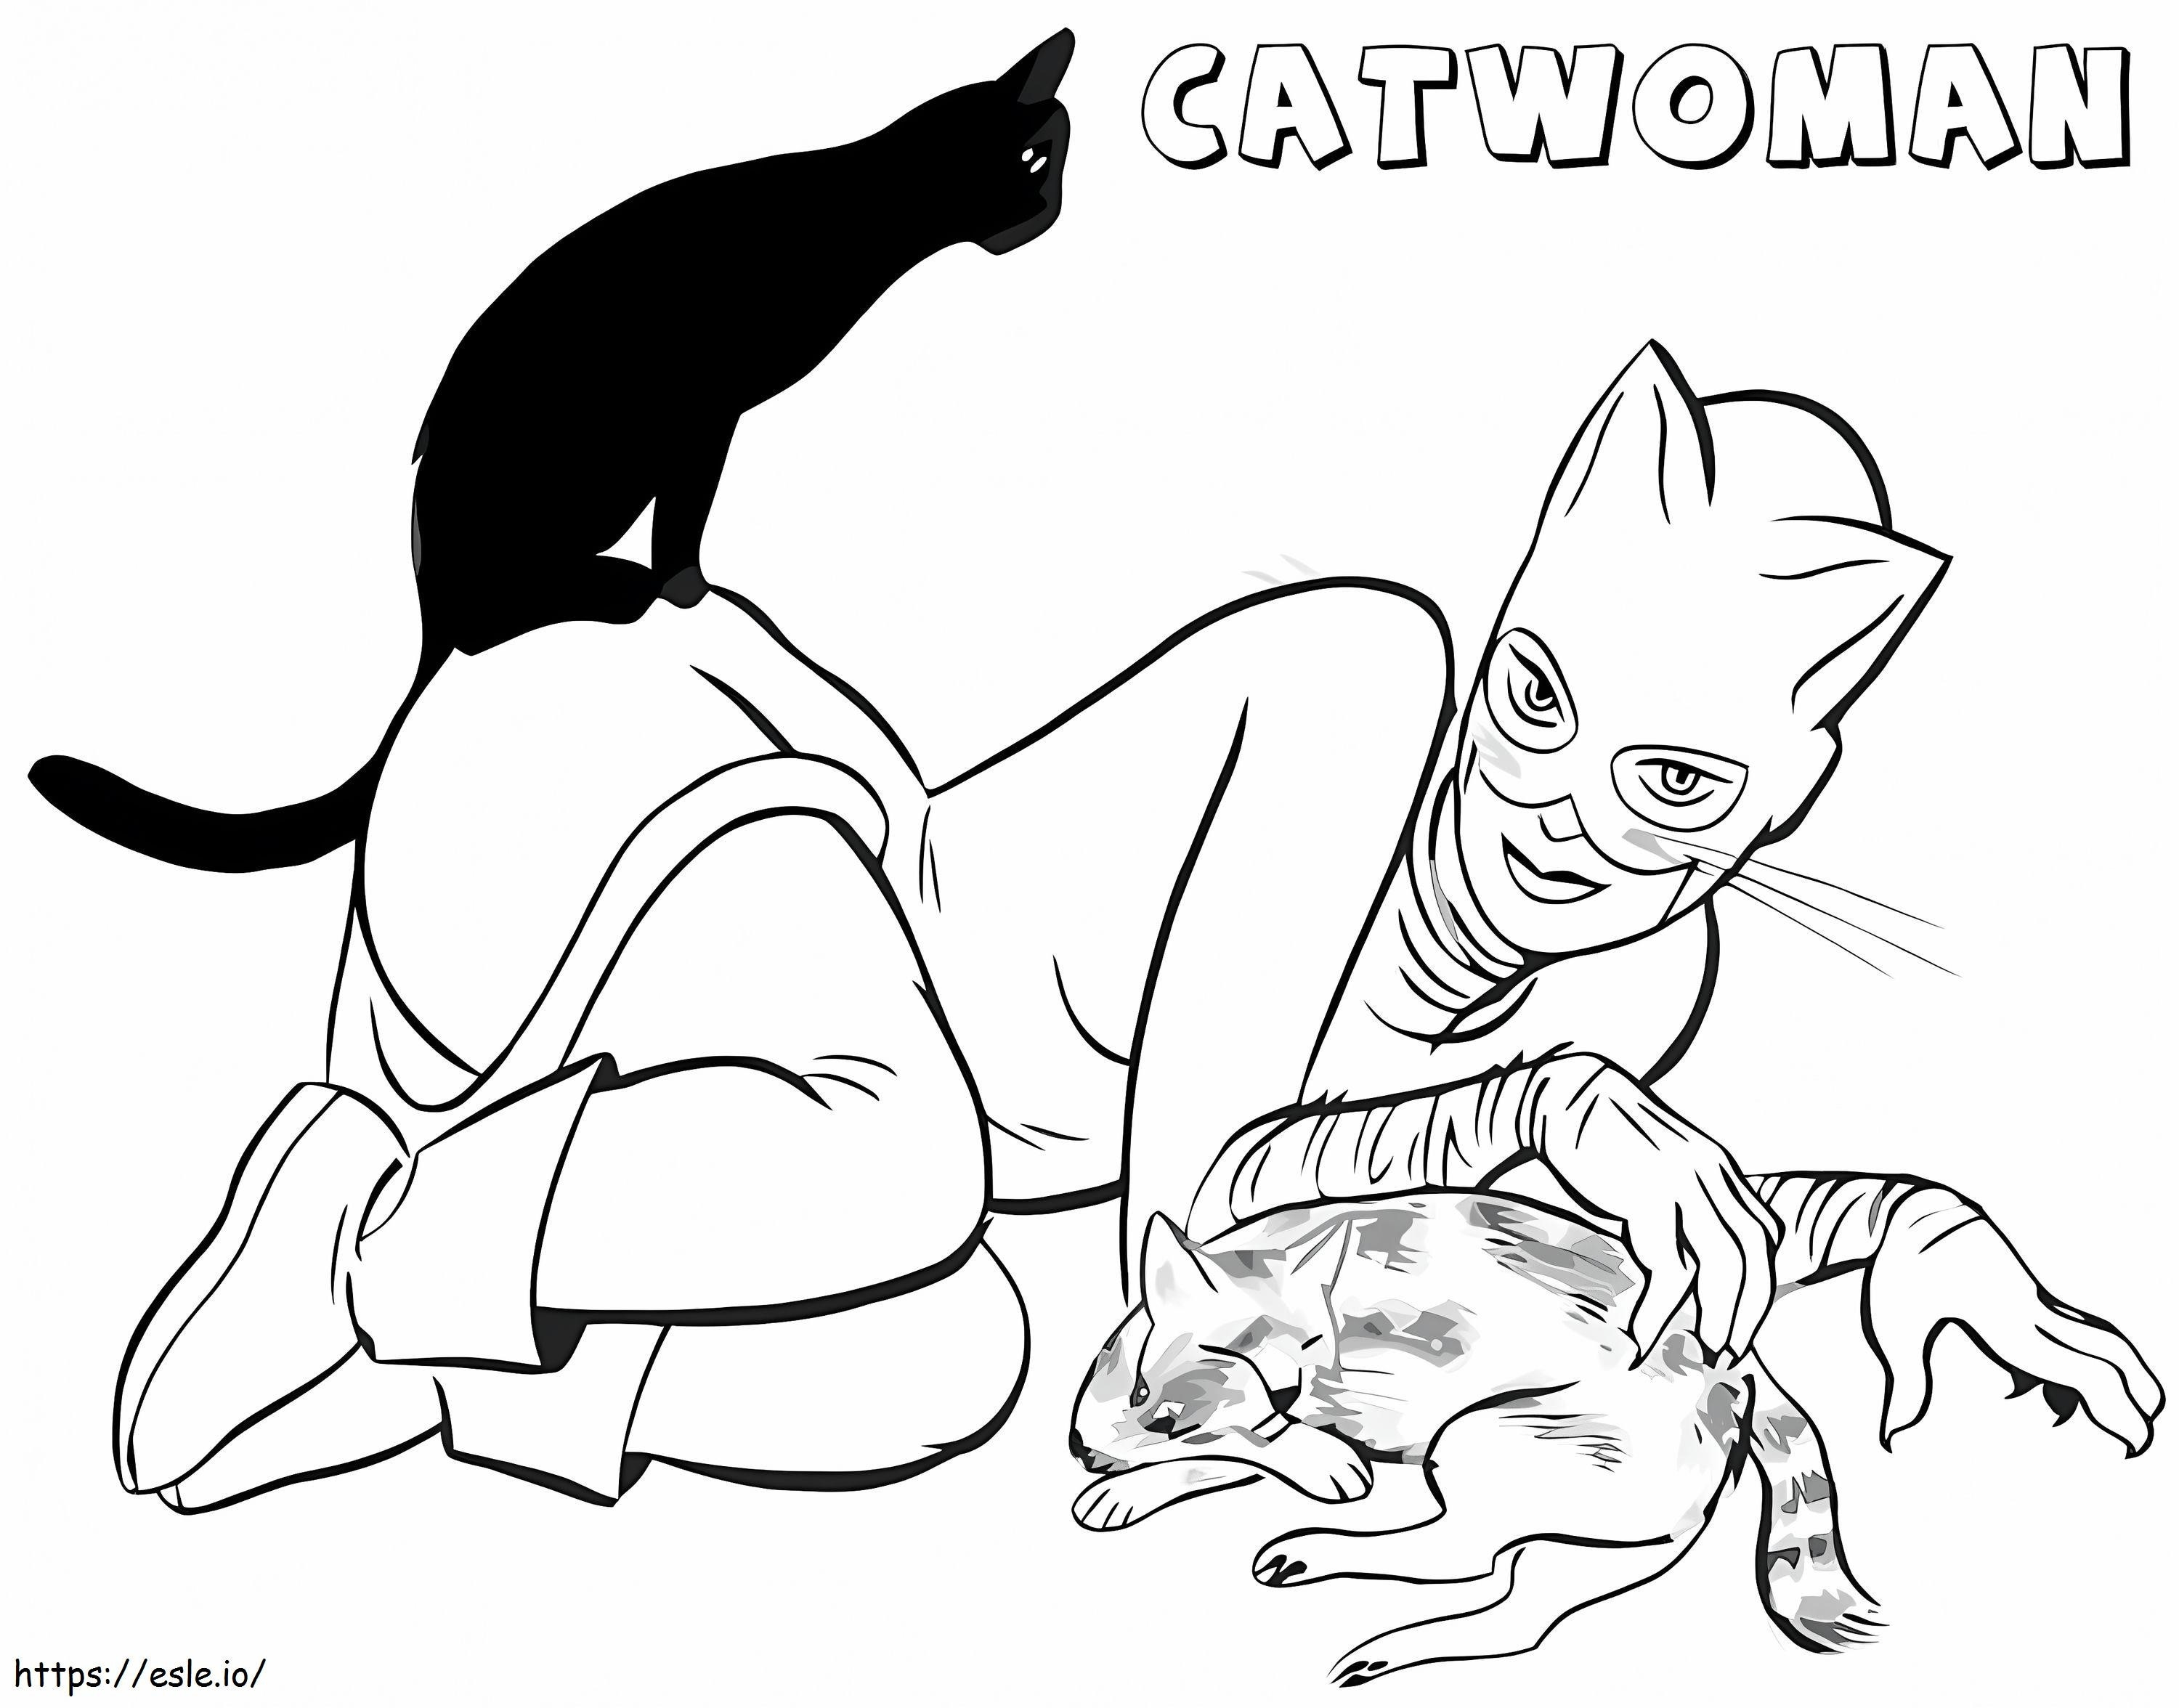 Catwoman și pisici de colorat